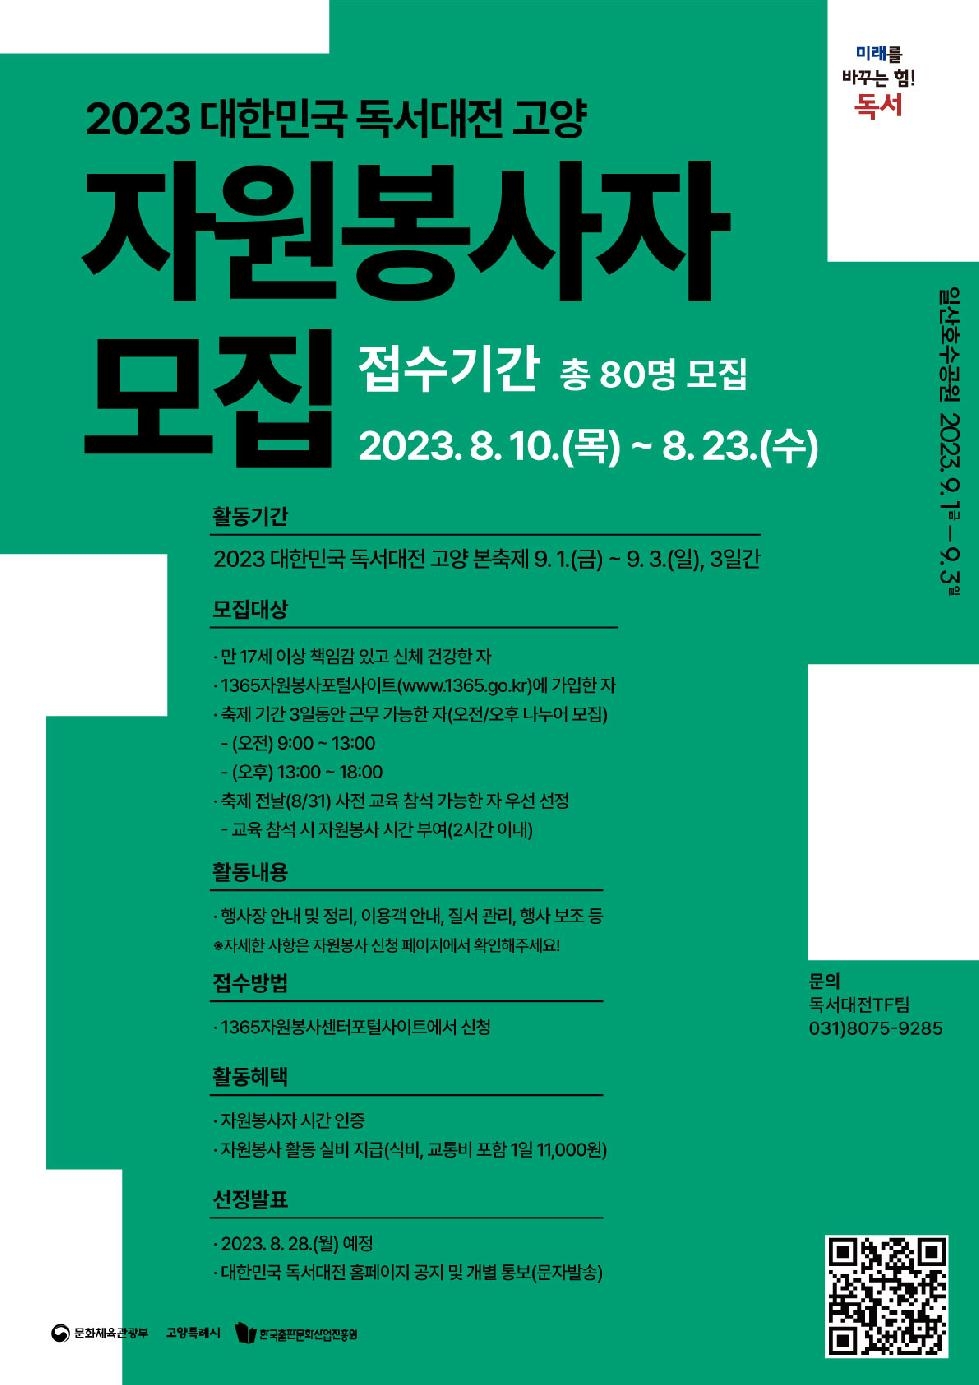 2023 대한민국 독서대전 고양 자원봉사자 모집